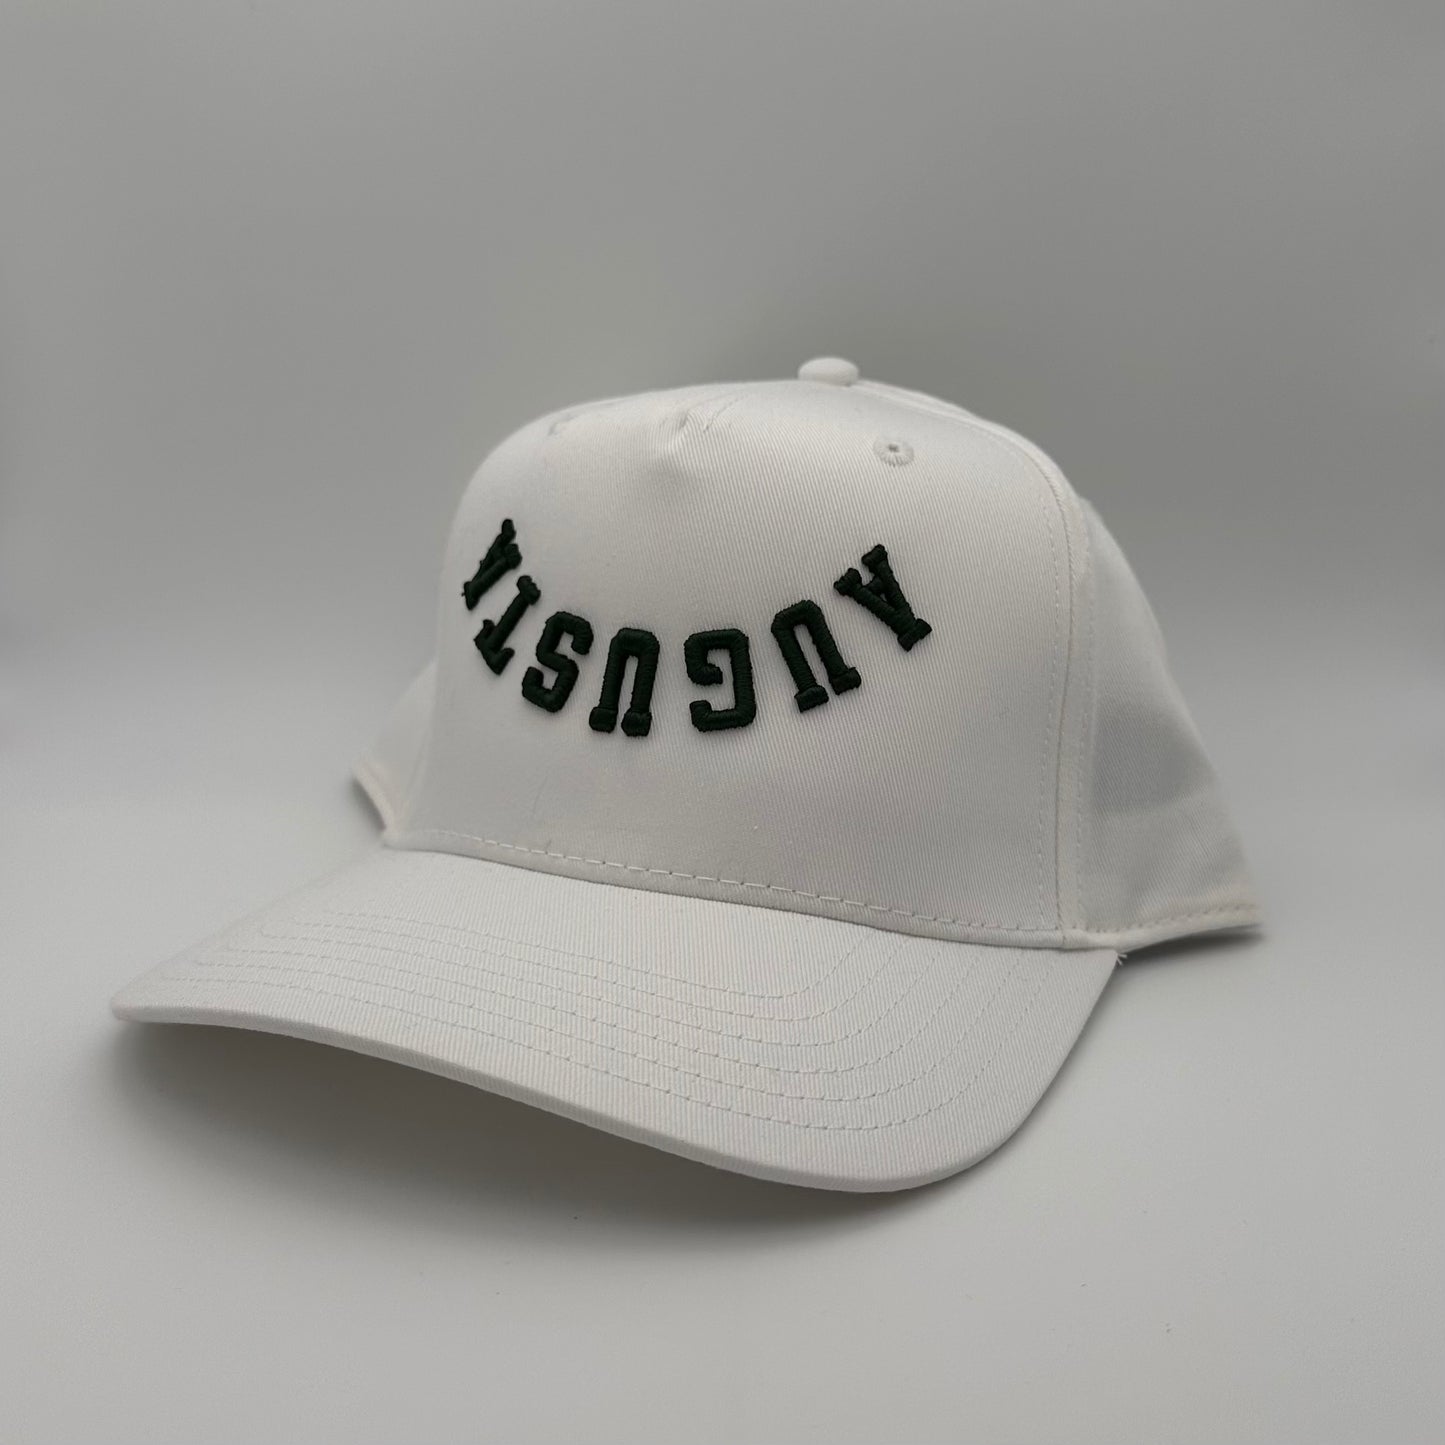 The Augusta Hat - White/Dk Green